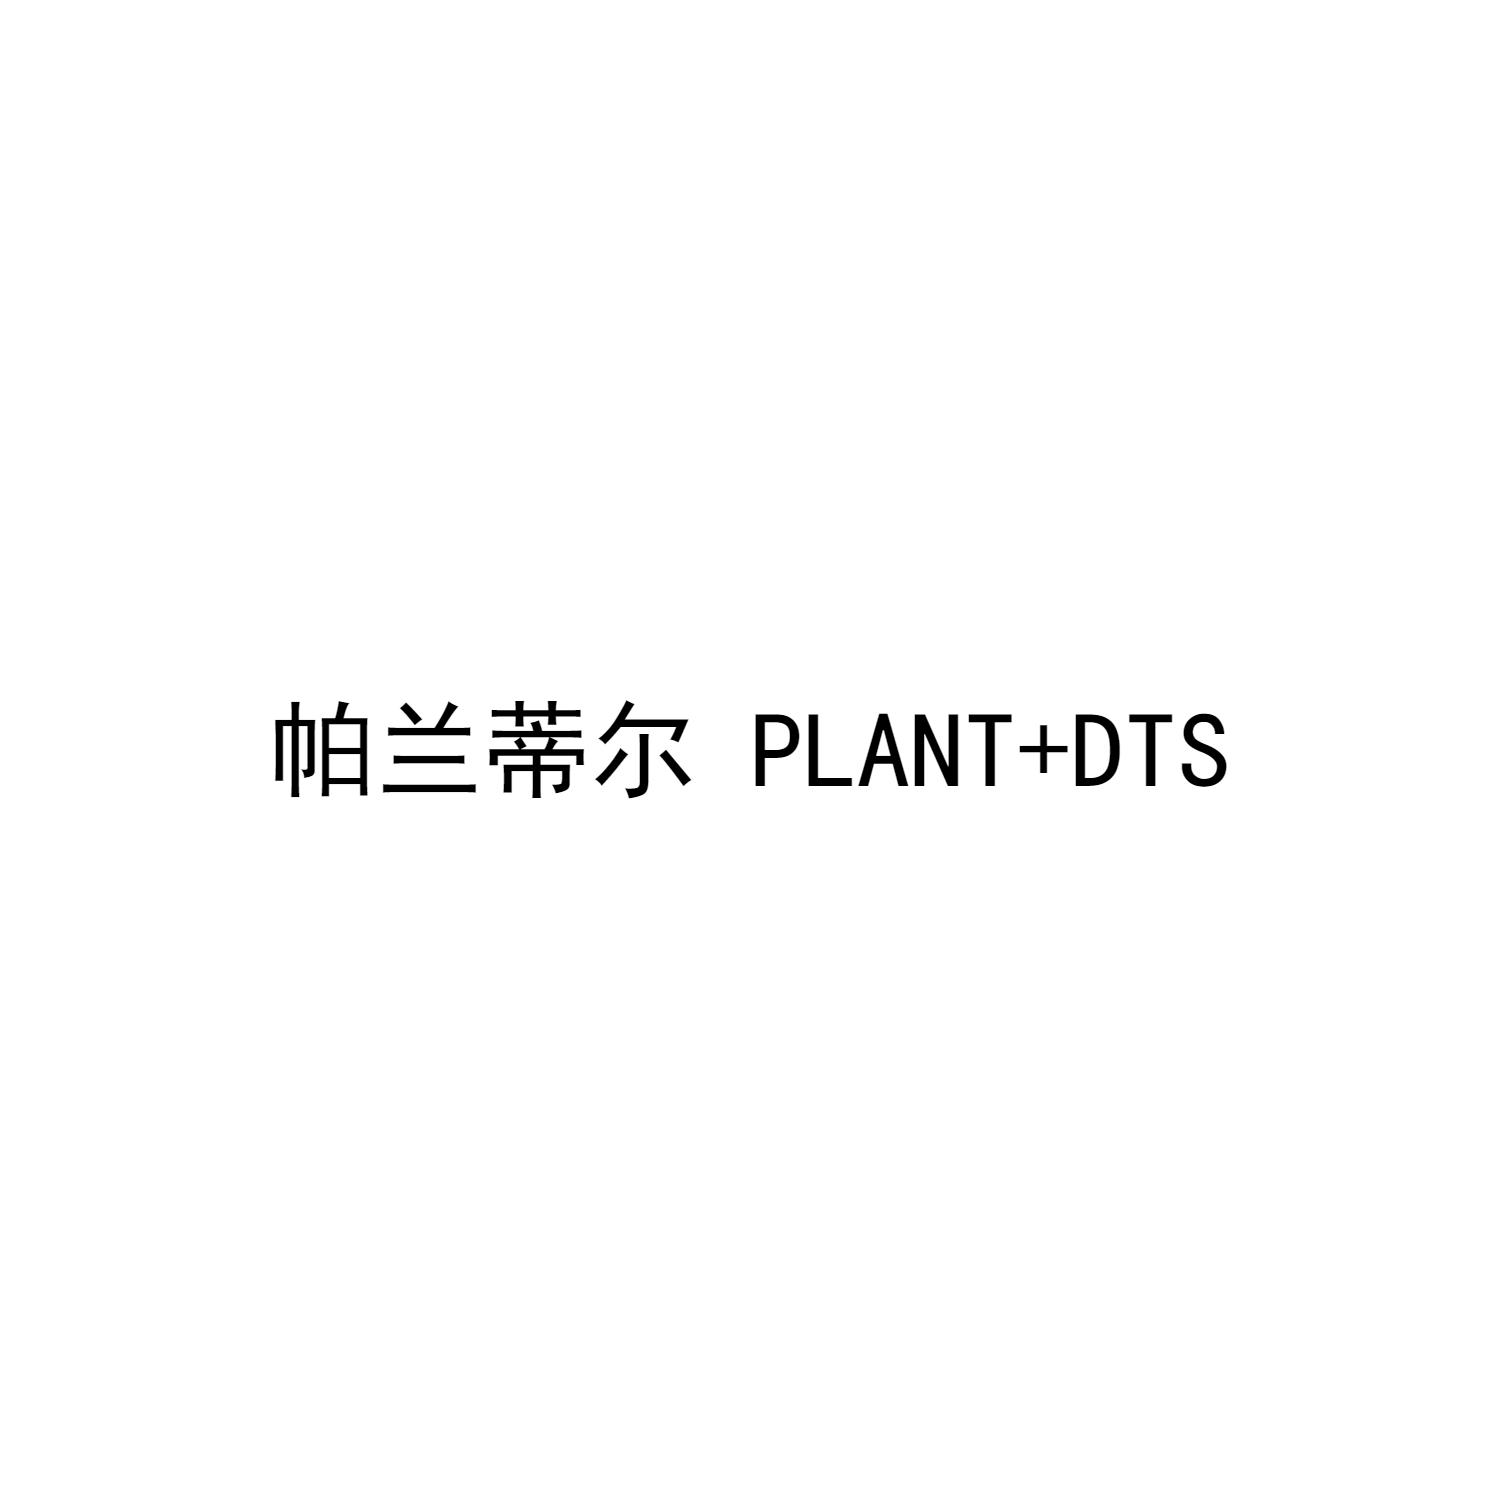 帕兰蒂尔 PLANT+DTS